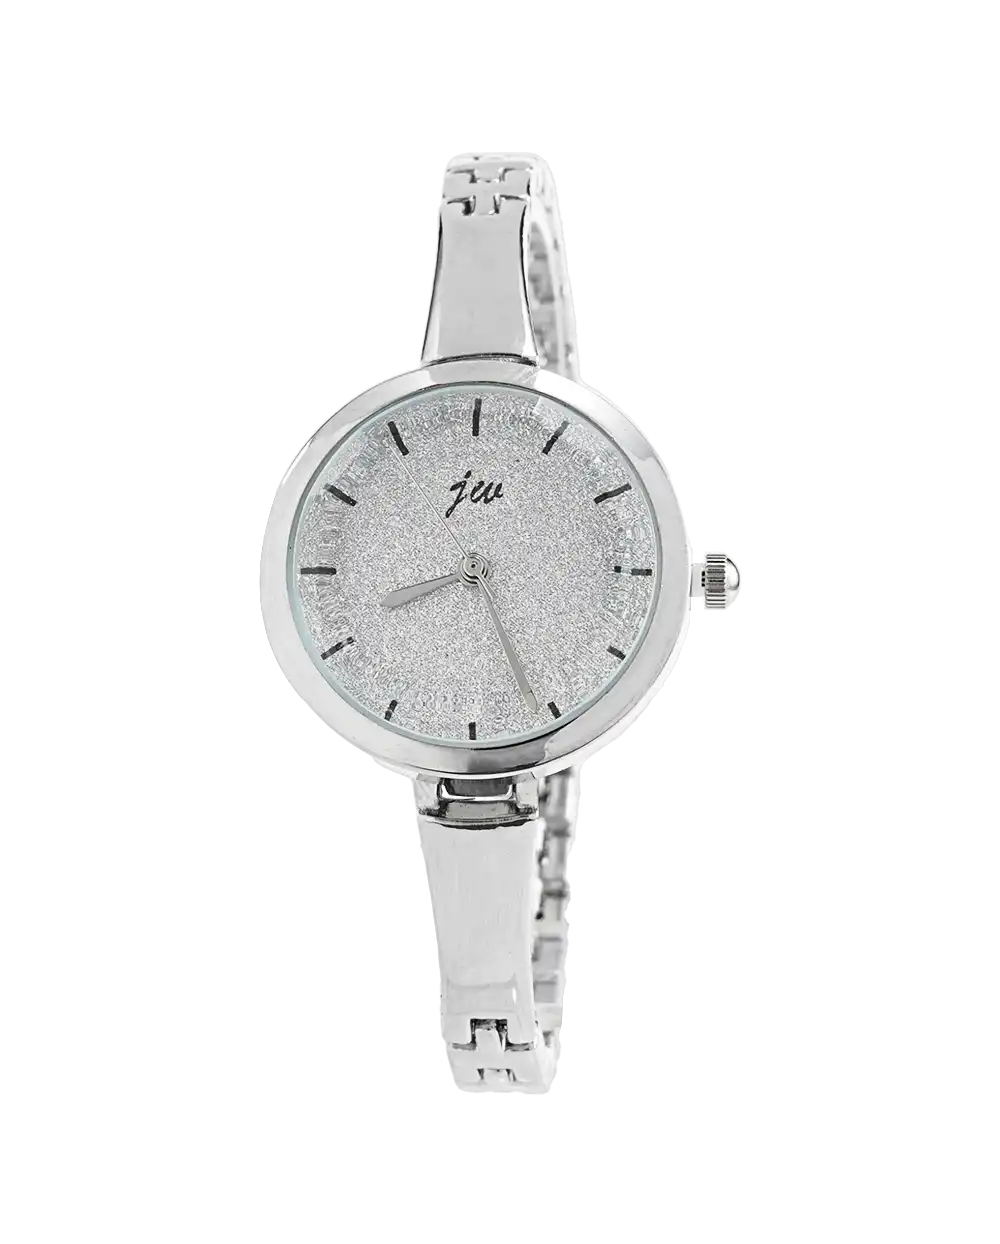 قیمت و خرید ساعت مچی زنانه دستبندی IW TIME مدل 1533 رنگ نقره ای همراه با ارسال رایگان و جعبه مخصوص 290 هزارتومان | ساعت زنانه دستبندی